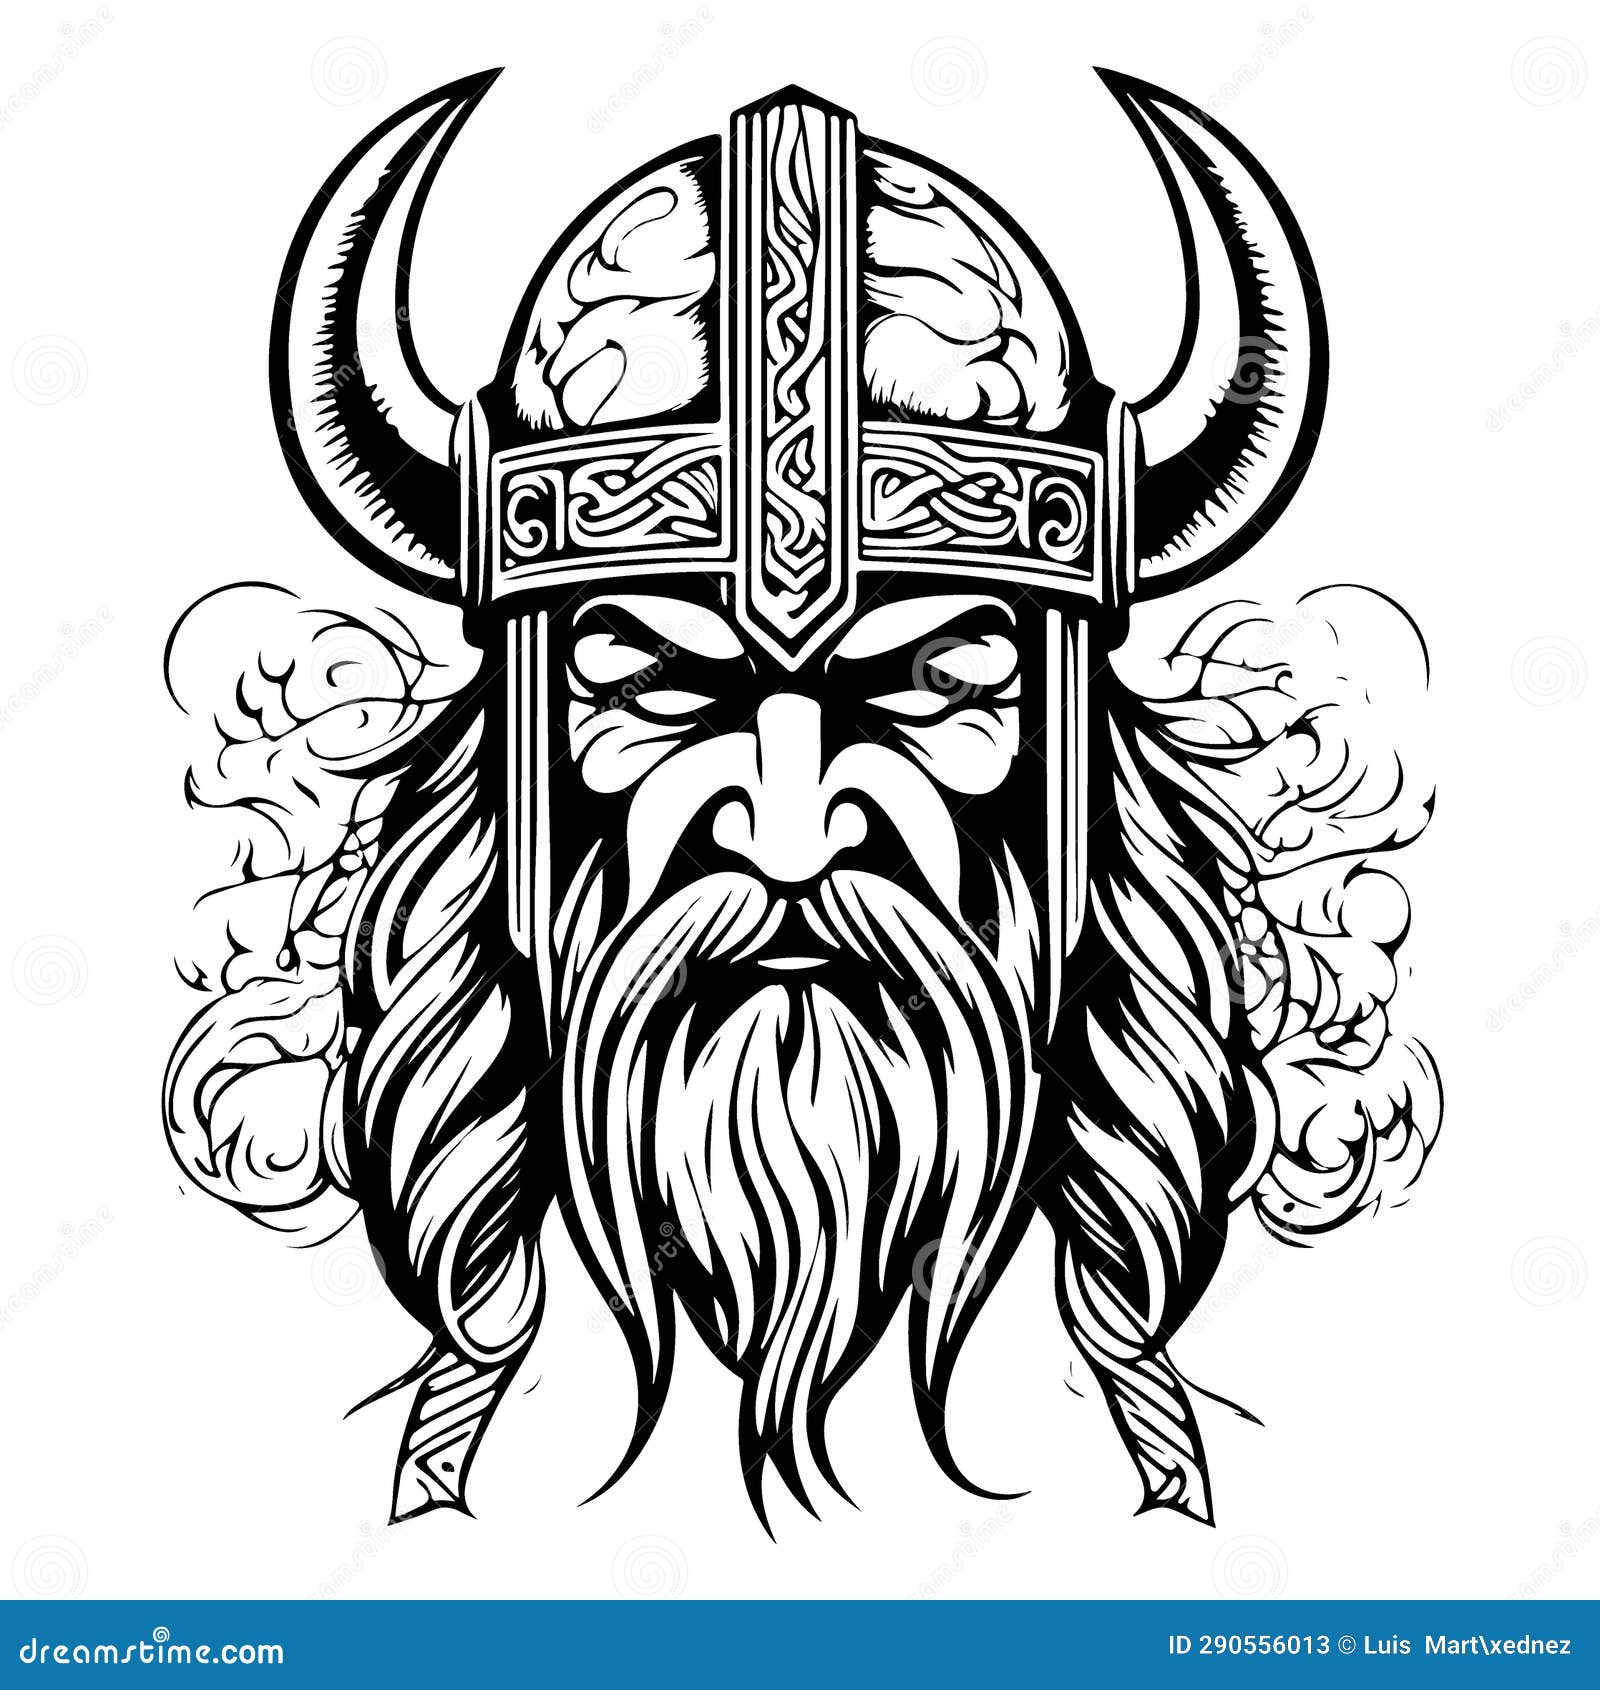 Great Lovely Viking Emblem Logo Vector Art Stock Illustration ...